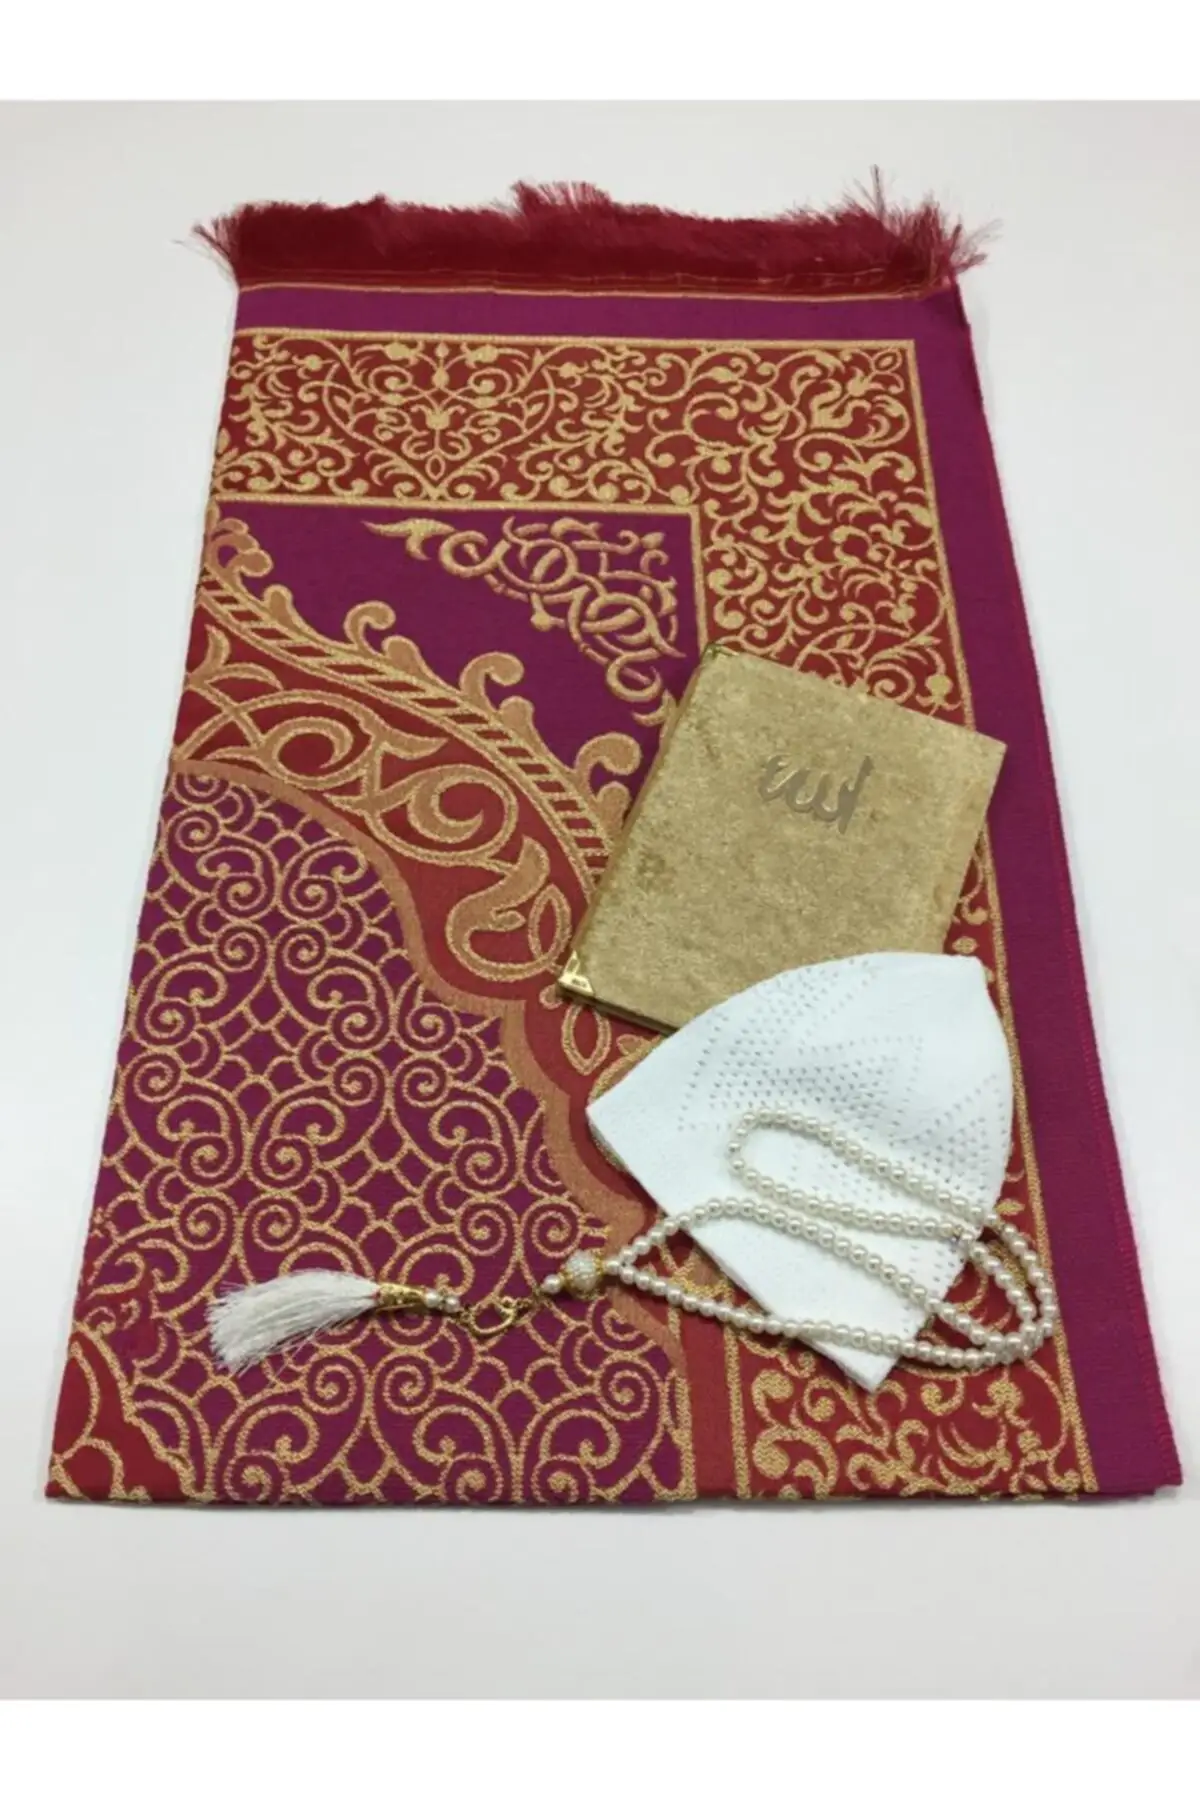 Мусульманский набор. Исламский набор. Коран четки и молитвенный коврик. Книга с молитвами мусульманская заказать.